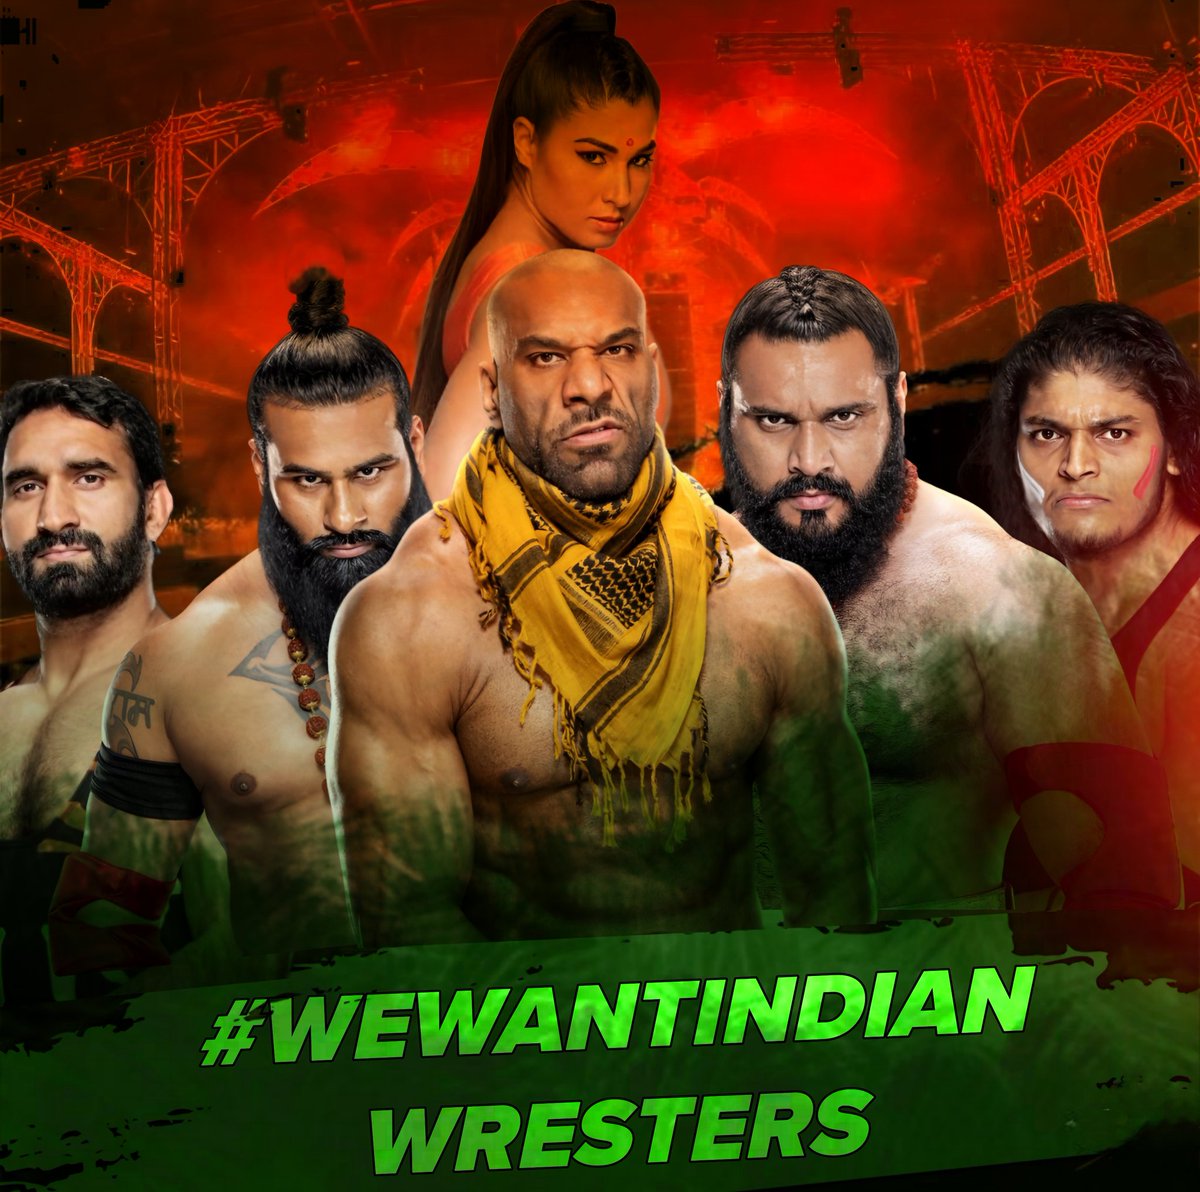 #WEWANTINDIANWRESTLERS 

@VeerMahaan @JinderMahal @Sanga_WWE @JeetRamaWWE @WWEIndia @ishanwrestling @SKWrestling_ @NewsXero